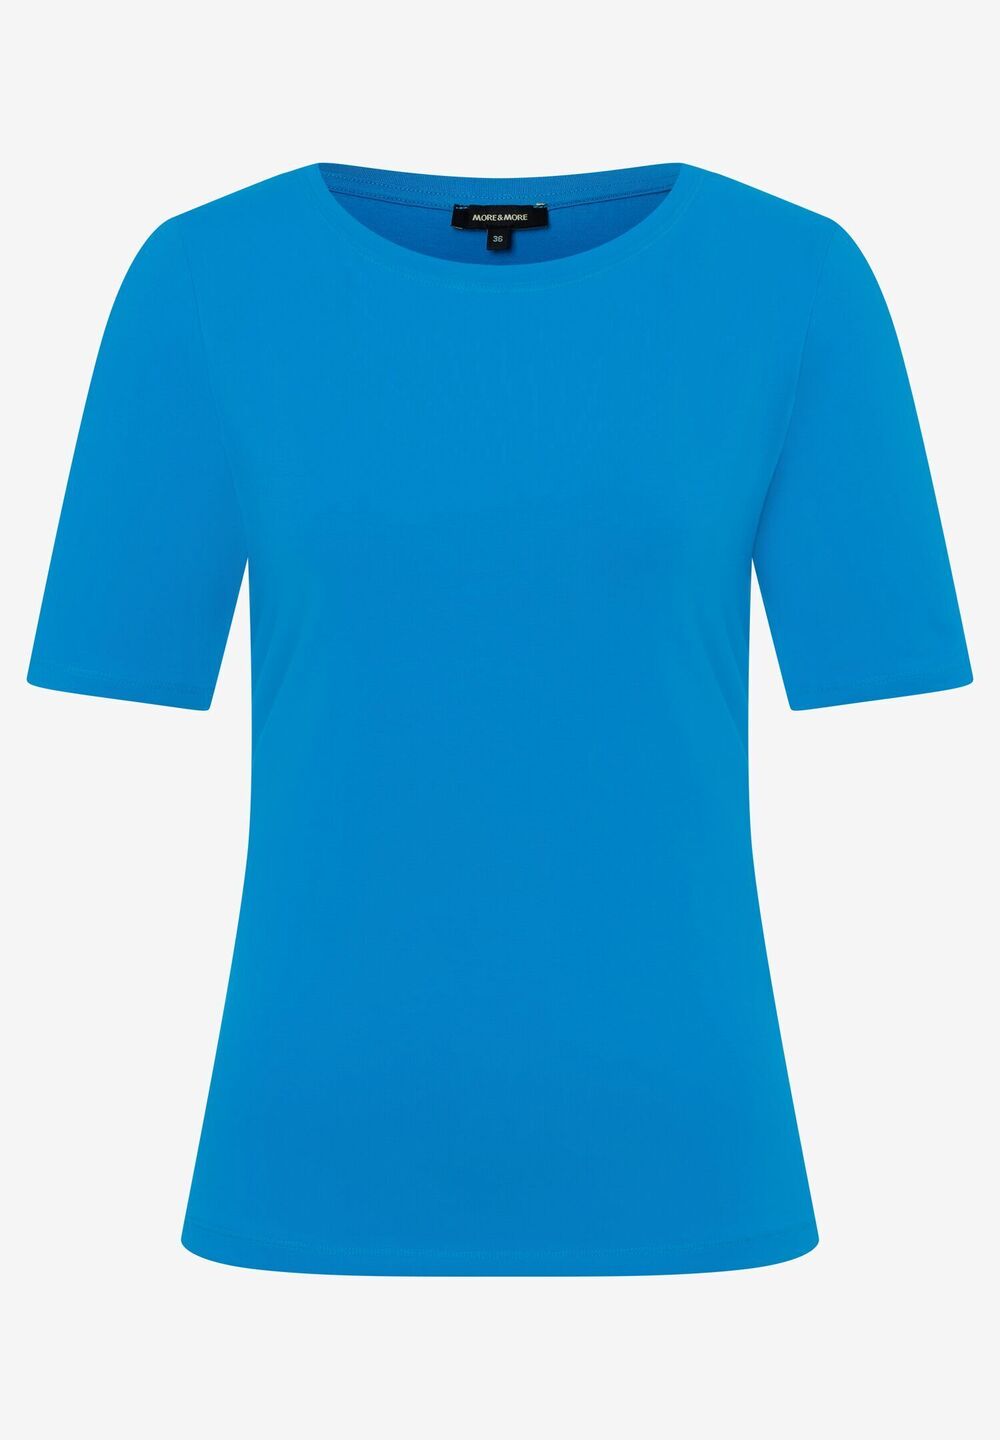 T-Shirt, U-Boot Ausschnitt, cool blue, Frühjahrs-Kollektion, blau Frontansicht